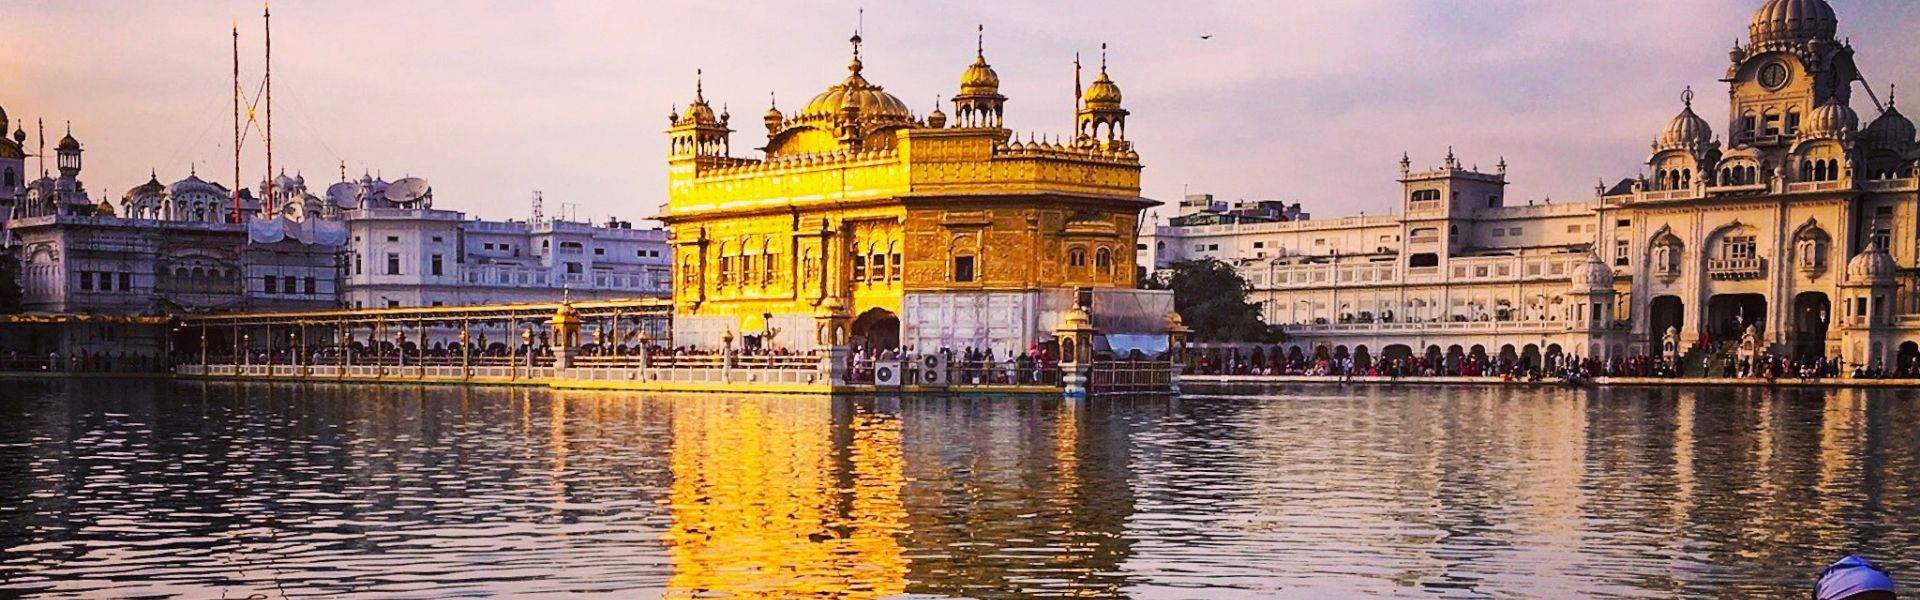 amritsa,amritsar tour,incredible india,tailor made holidays,vacation